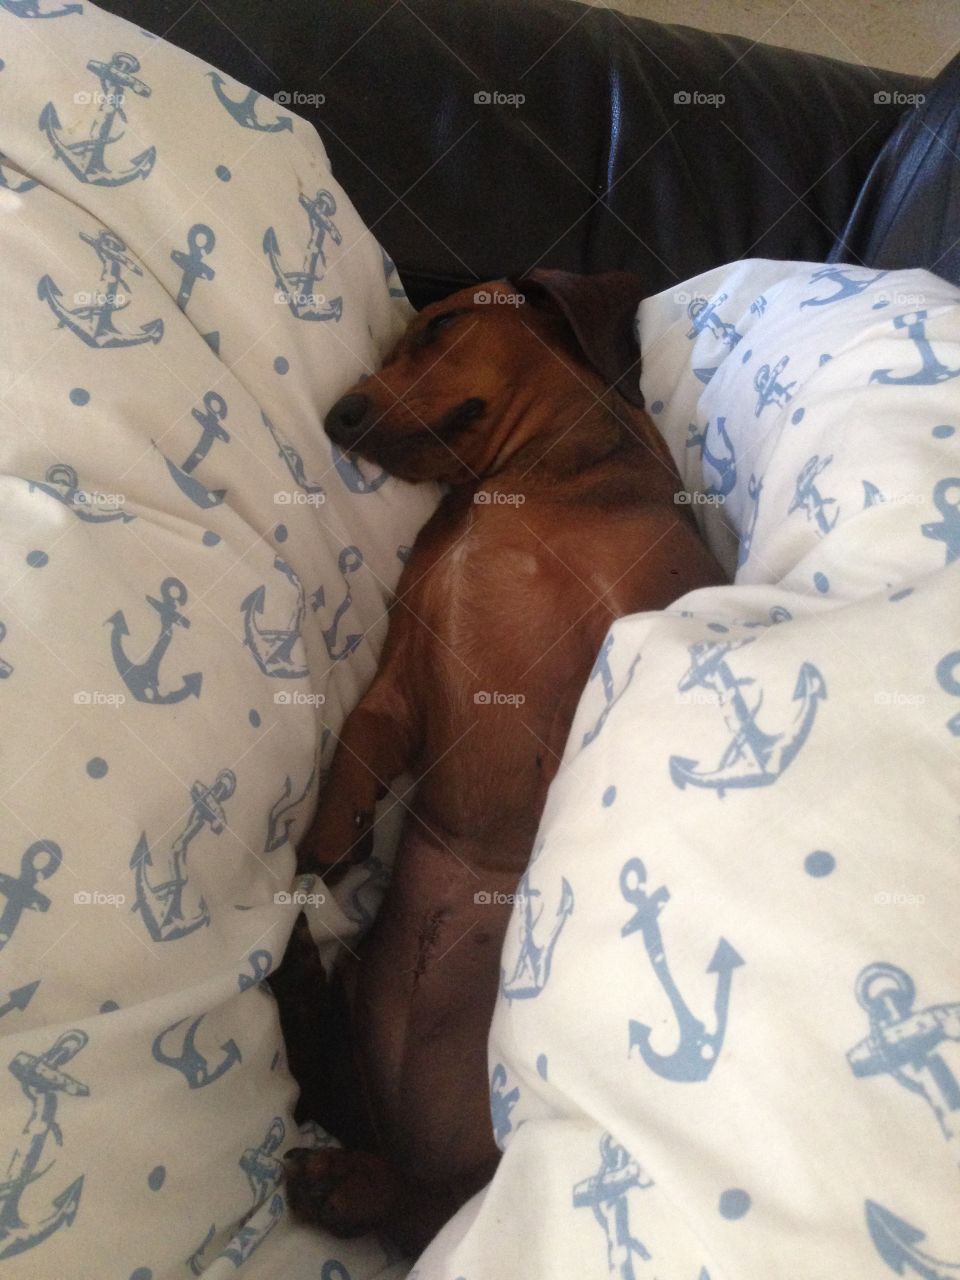 Sausage dog asleep on bed